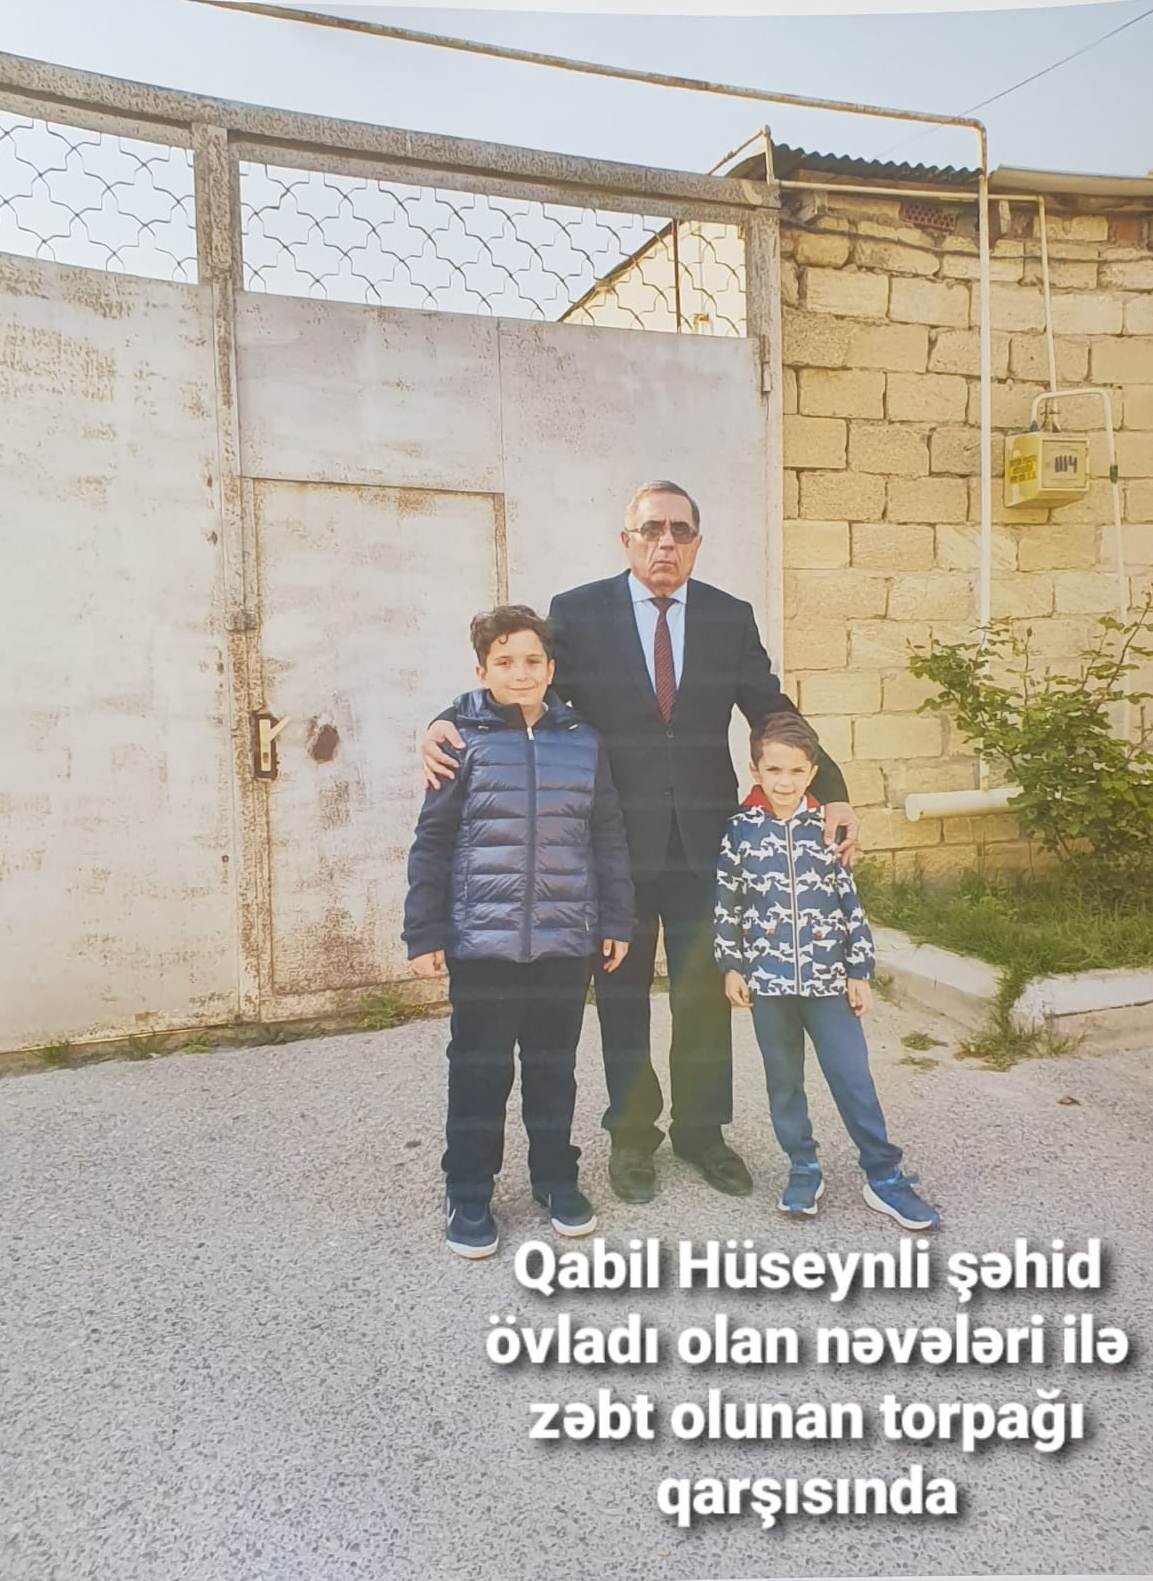 Qabil Huseynli neveleri ile.jpg (223 KB)